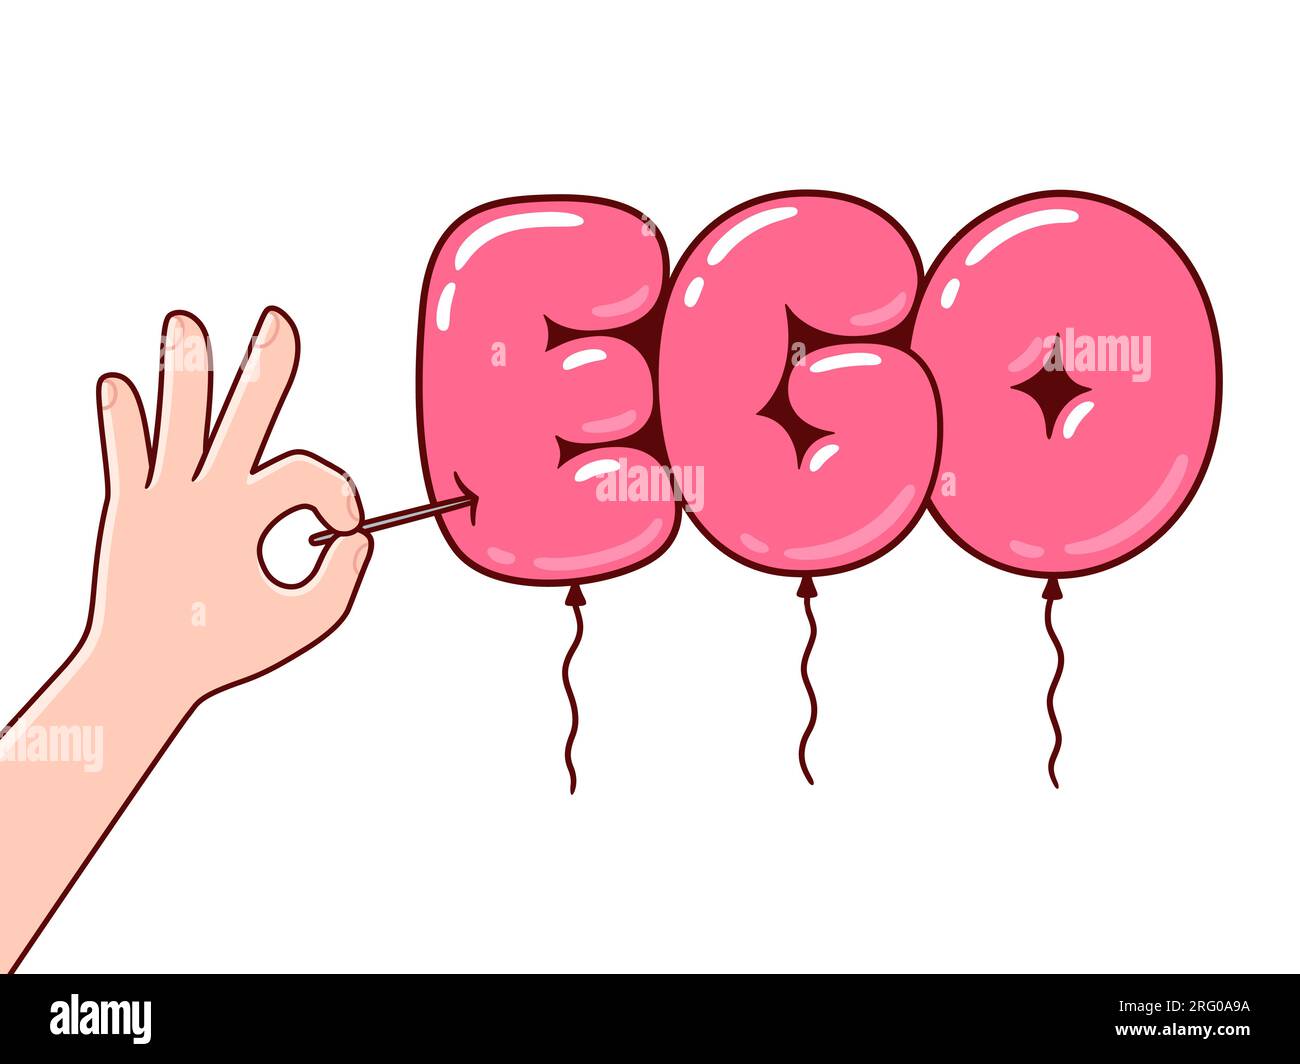 Concetto di ego gonfiato. Mano che regge un palloncino EGO DEL cartone animato che scoppia un ago. Illustrazione Vector clip art, disegno in stile fumetto. Illustrazione Vettoriale